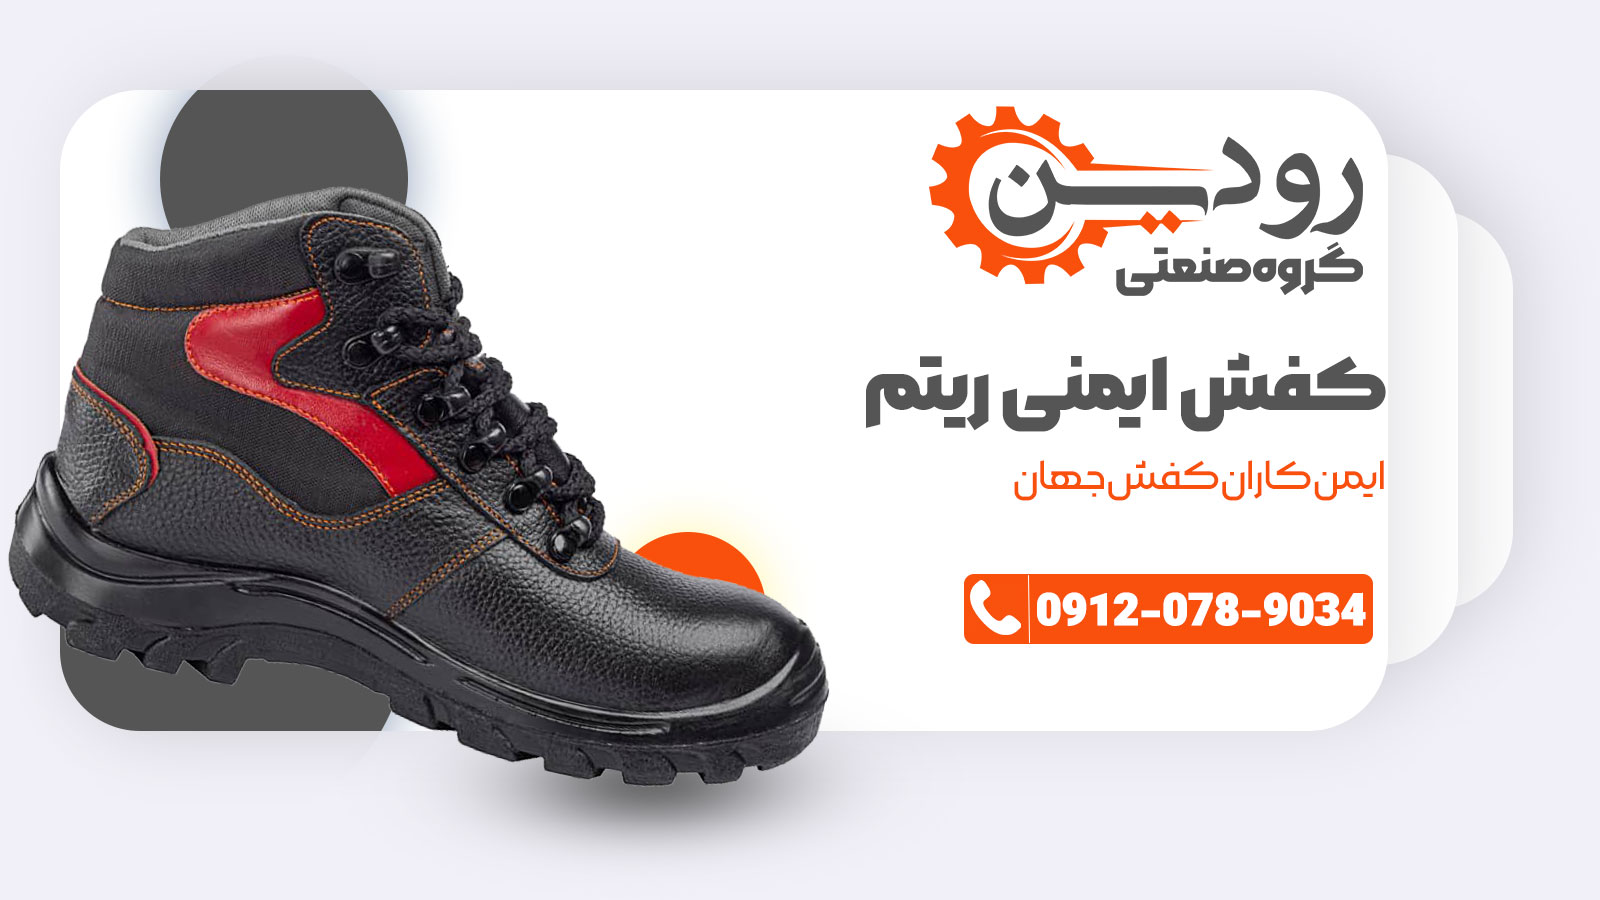 کفش ایمنی ریتم را از شرکت صنعتی رودین به قیمت کارخانه بخرید.